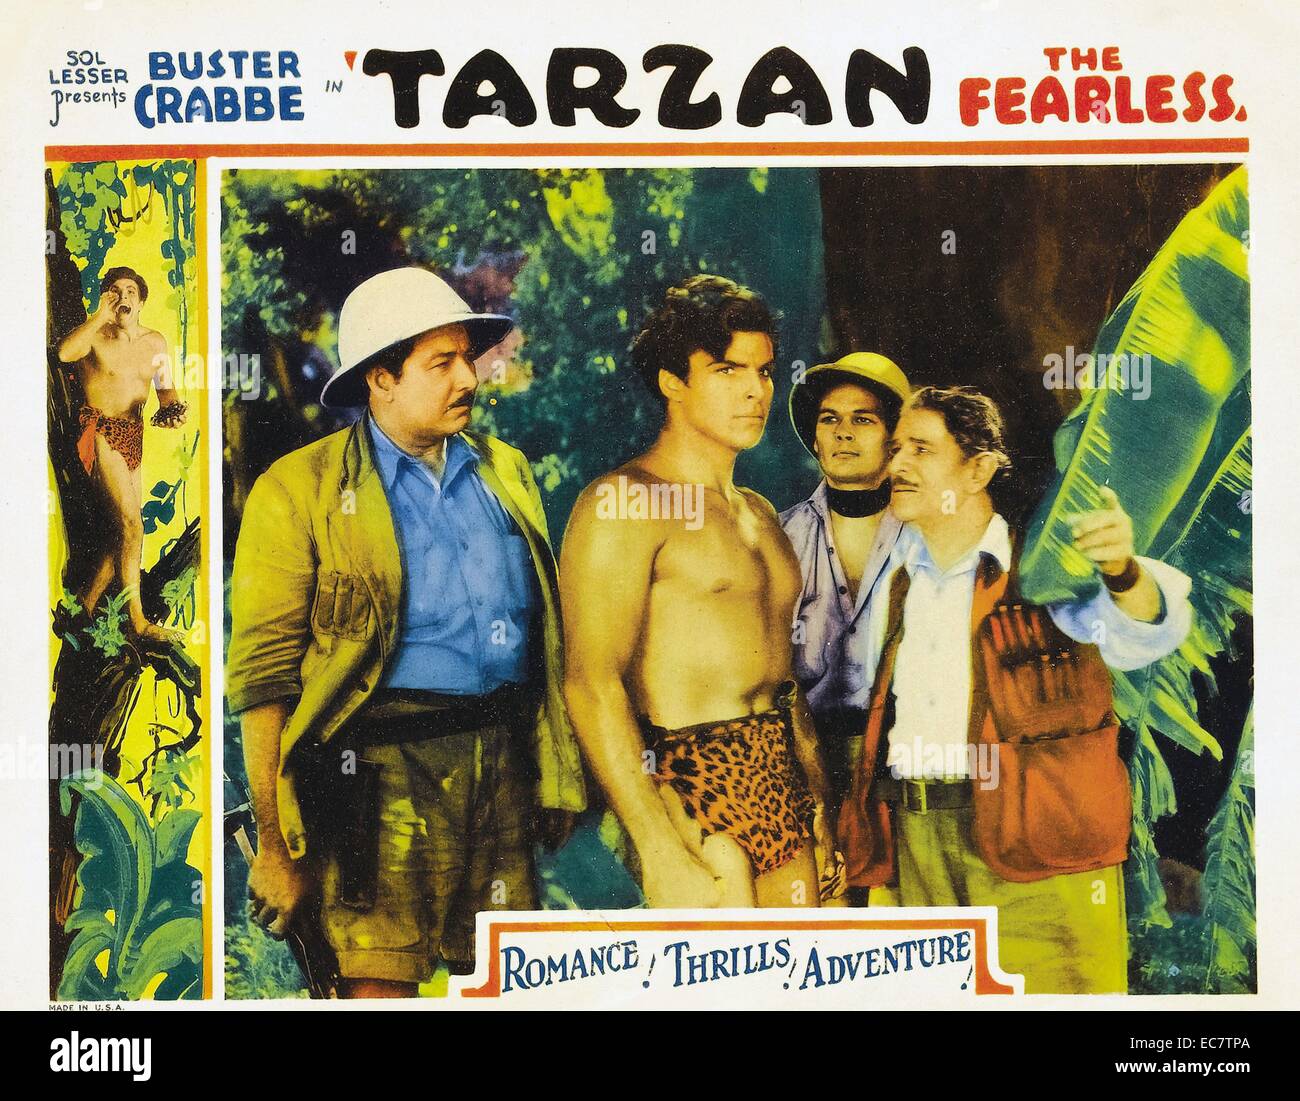 Tarzan der Furchtlose (1933) ist ein 12 Kapitel film Serielle mit Buster Crabbe in seinem nur Aussehen wie Tarzan. Es wurde auch als eine 71-minütige Spielfilm, der die ersten vier Kapitel der seriellen Version bestand freigegeben. Co-starring Jacqueline Wells, der später ihren Namen zu Julie Bishop geändert. Stockfoto